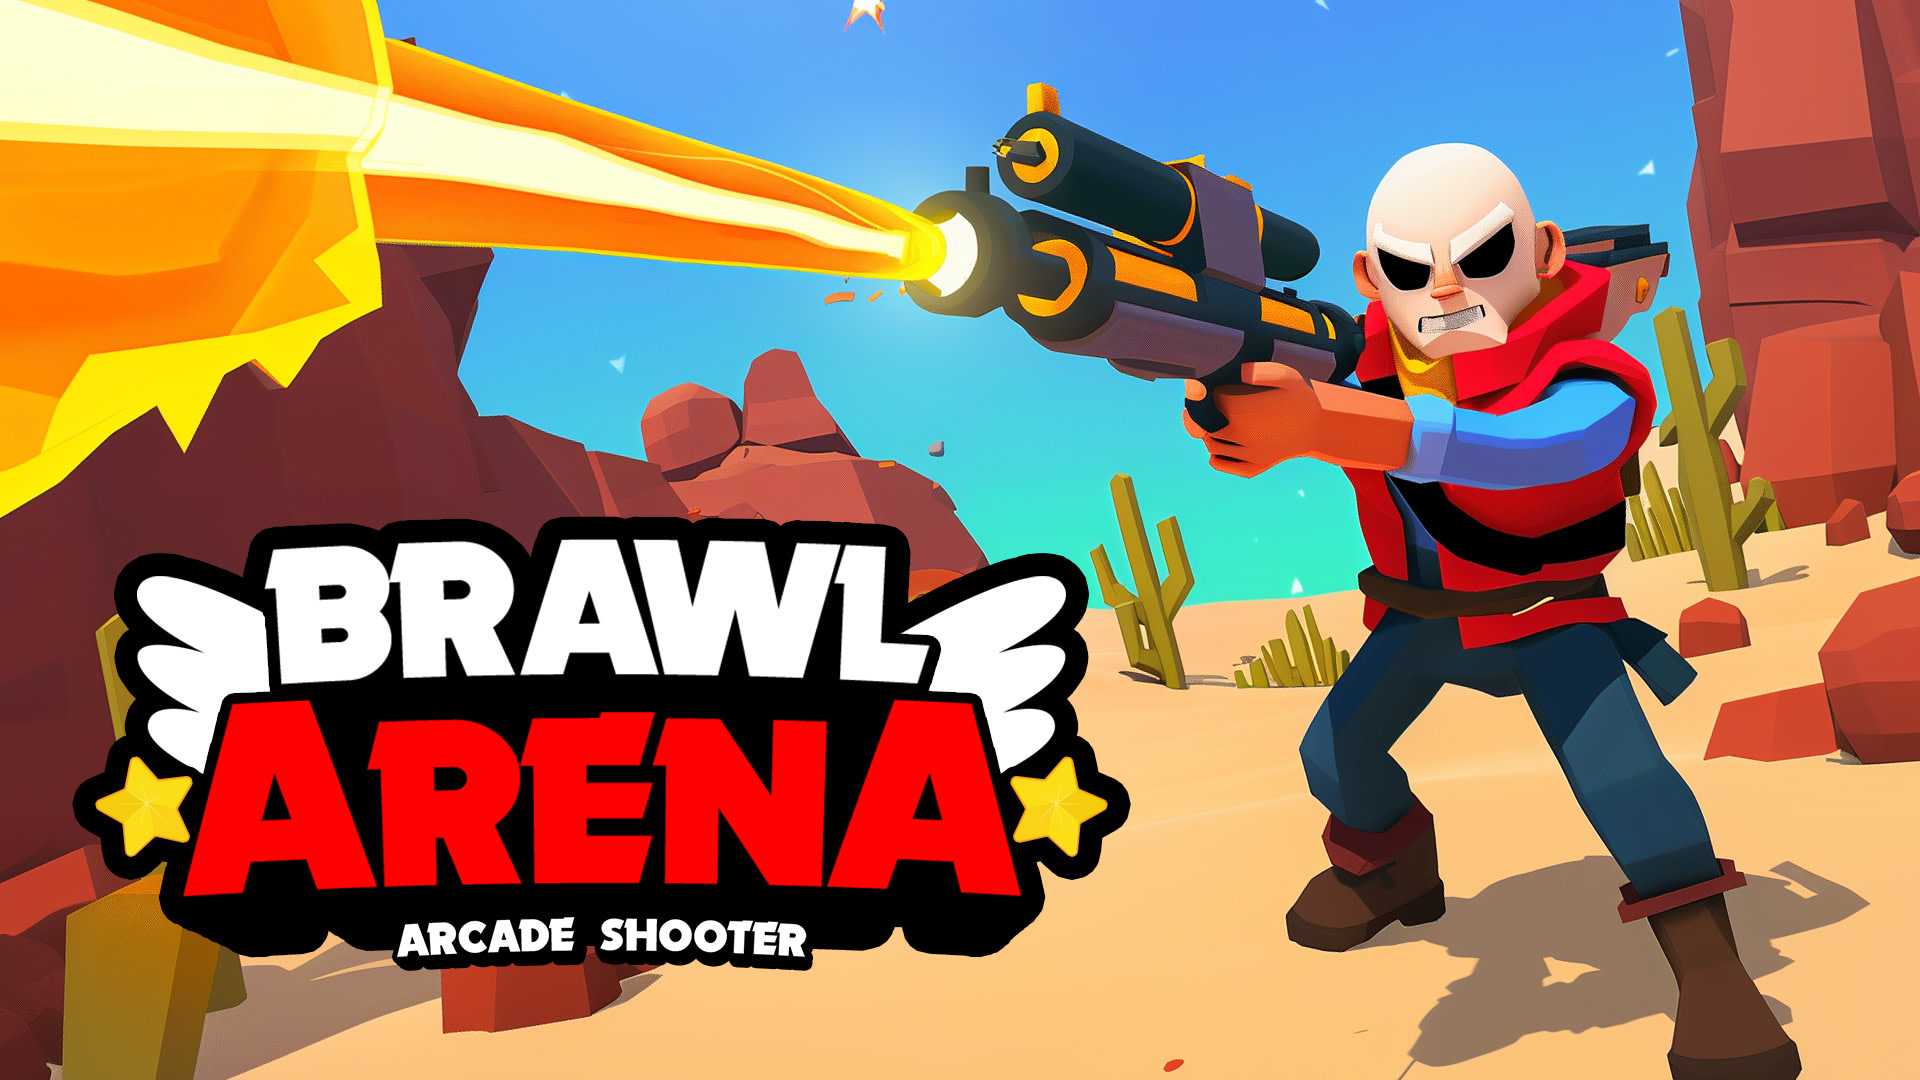 Brawl Arena: Arcade Shooter